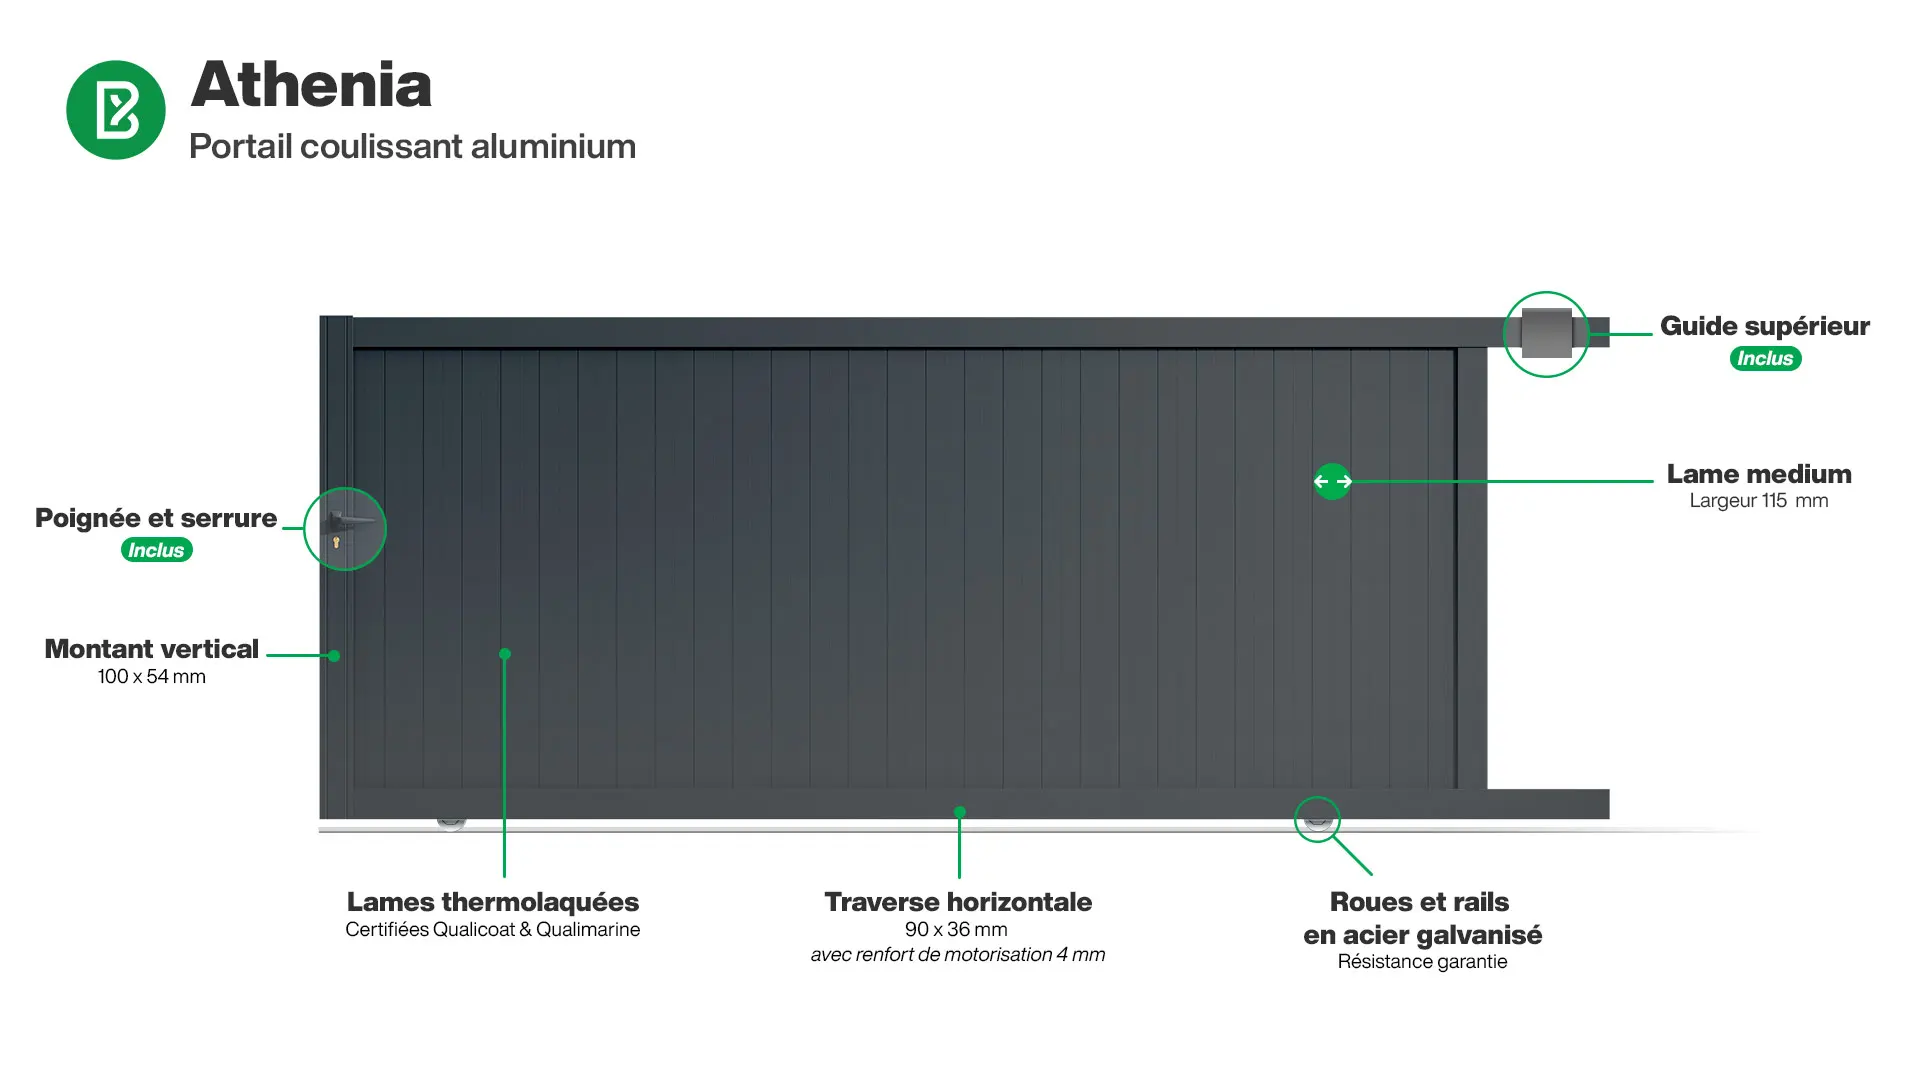 Portail : Infographie d'un portail coulissant aluminium modèle ATHENIA